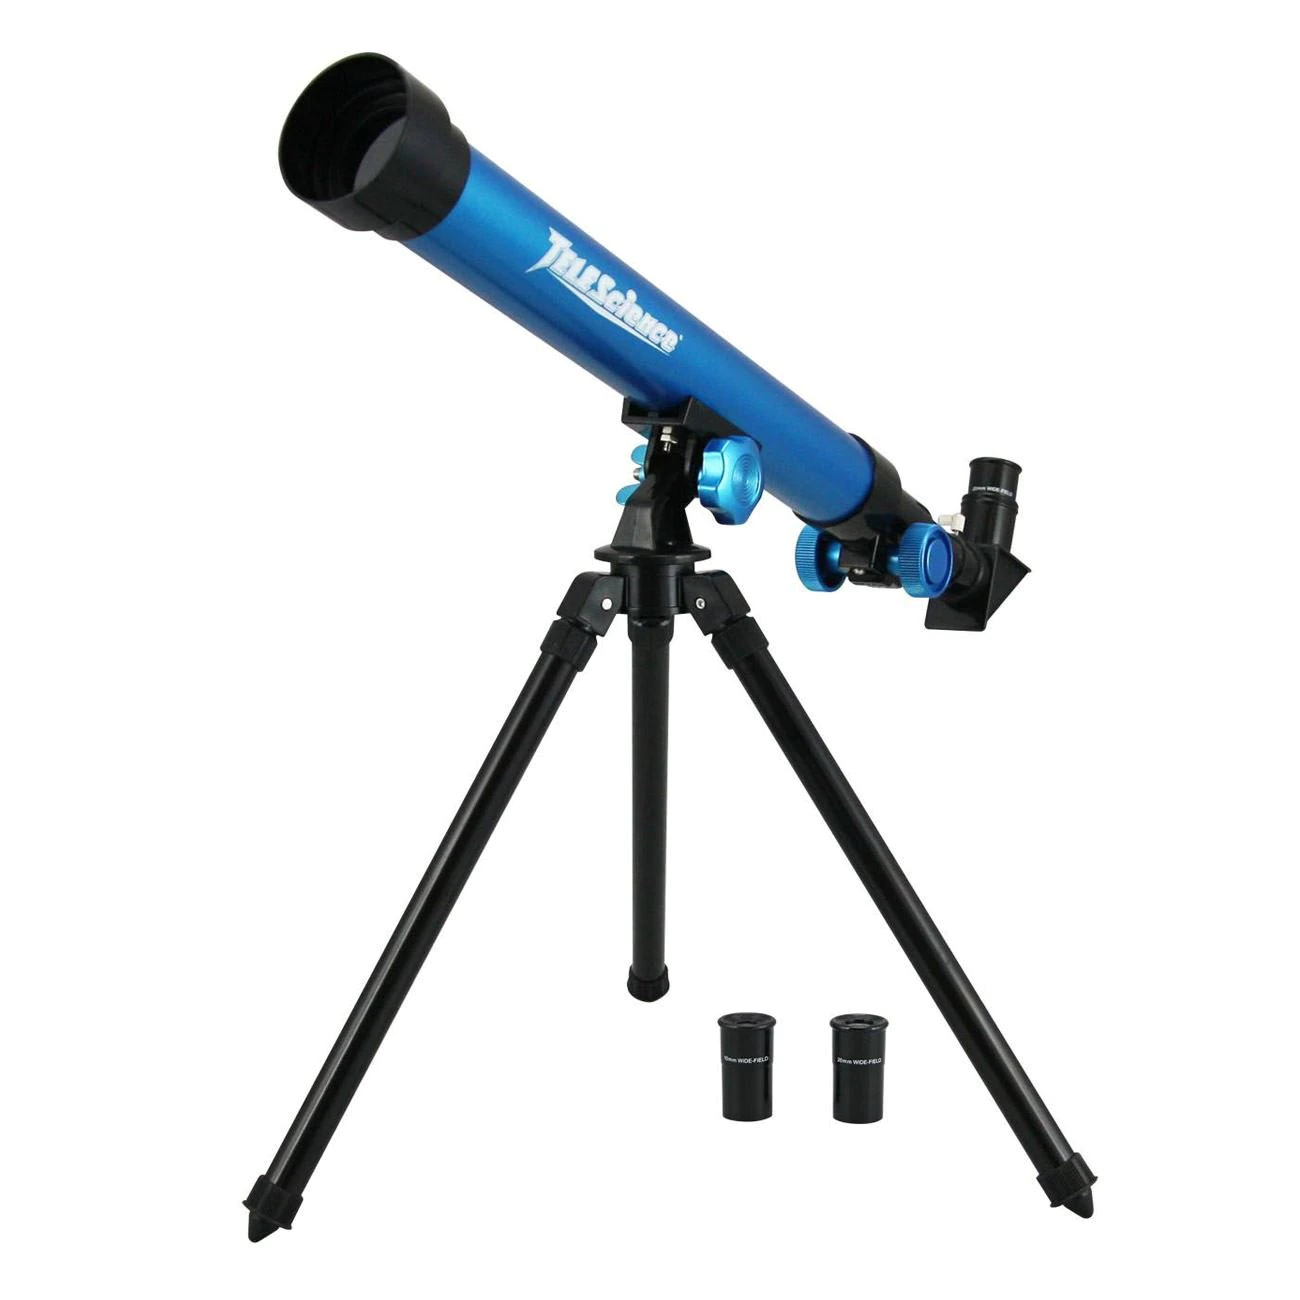 Telescop albastru pentru copii, cu aplicatie de mobil, Lioness, 64 x 8 x 20 cm [4]